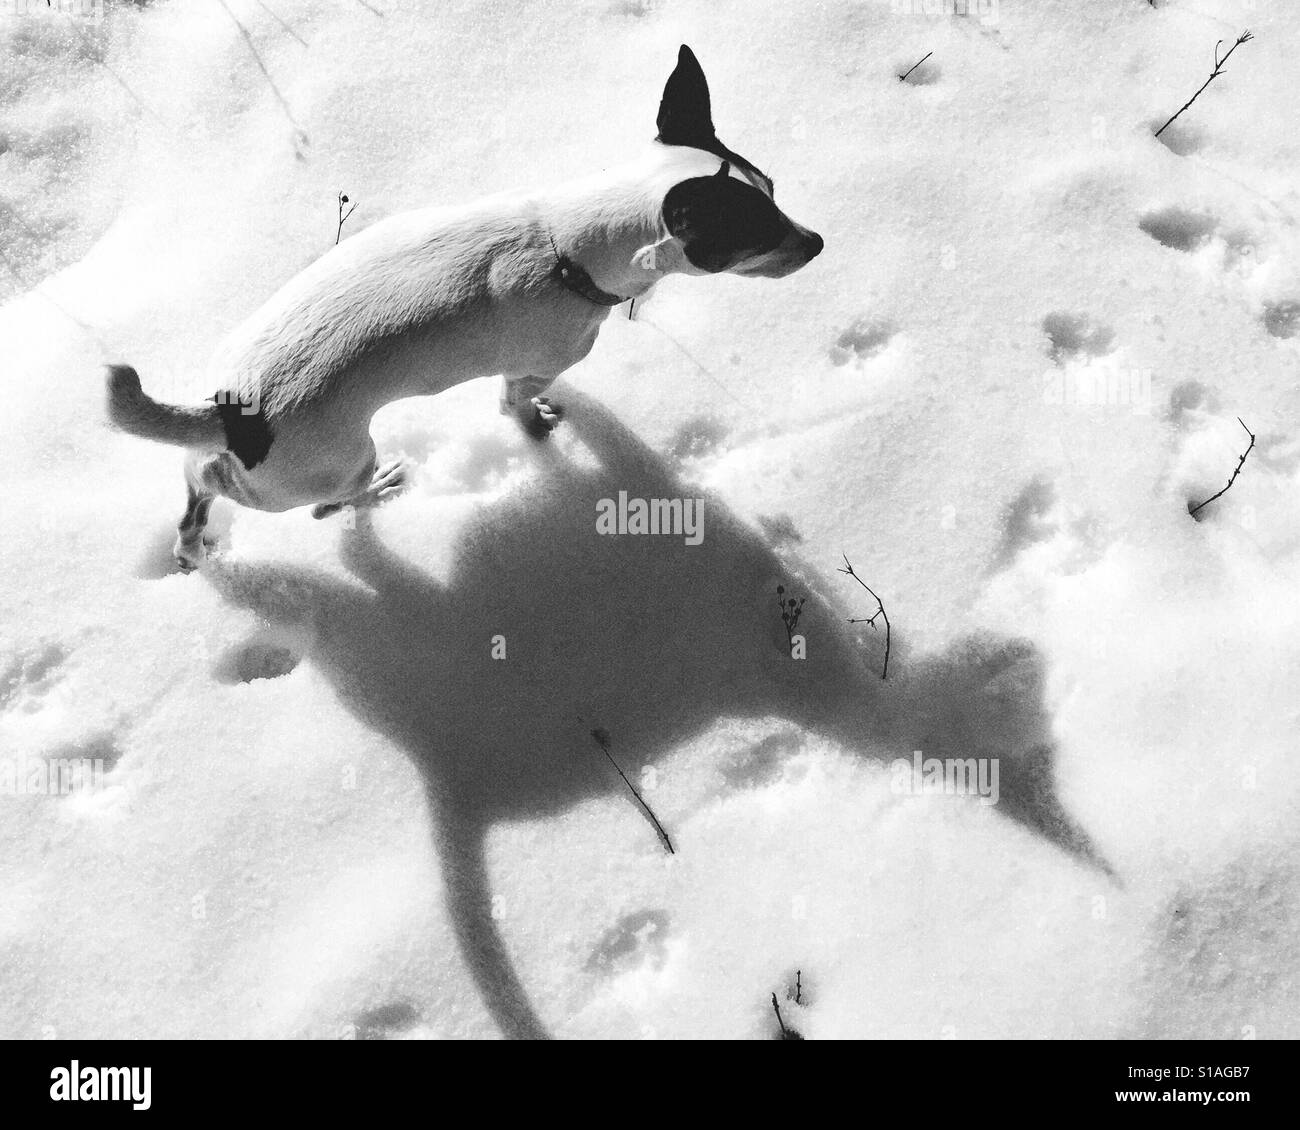 Chien dans la neige le long d'une journée d'hiver. Son ombre ressemble à un chat. Noir et blanc. Banque D'Images